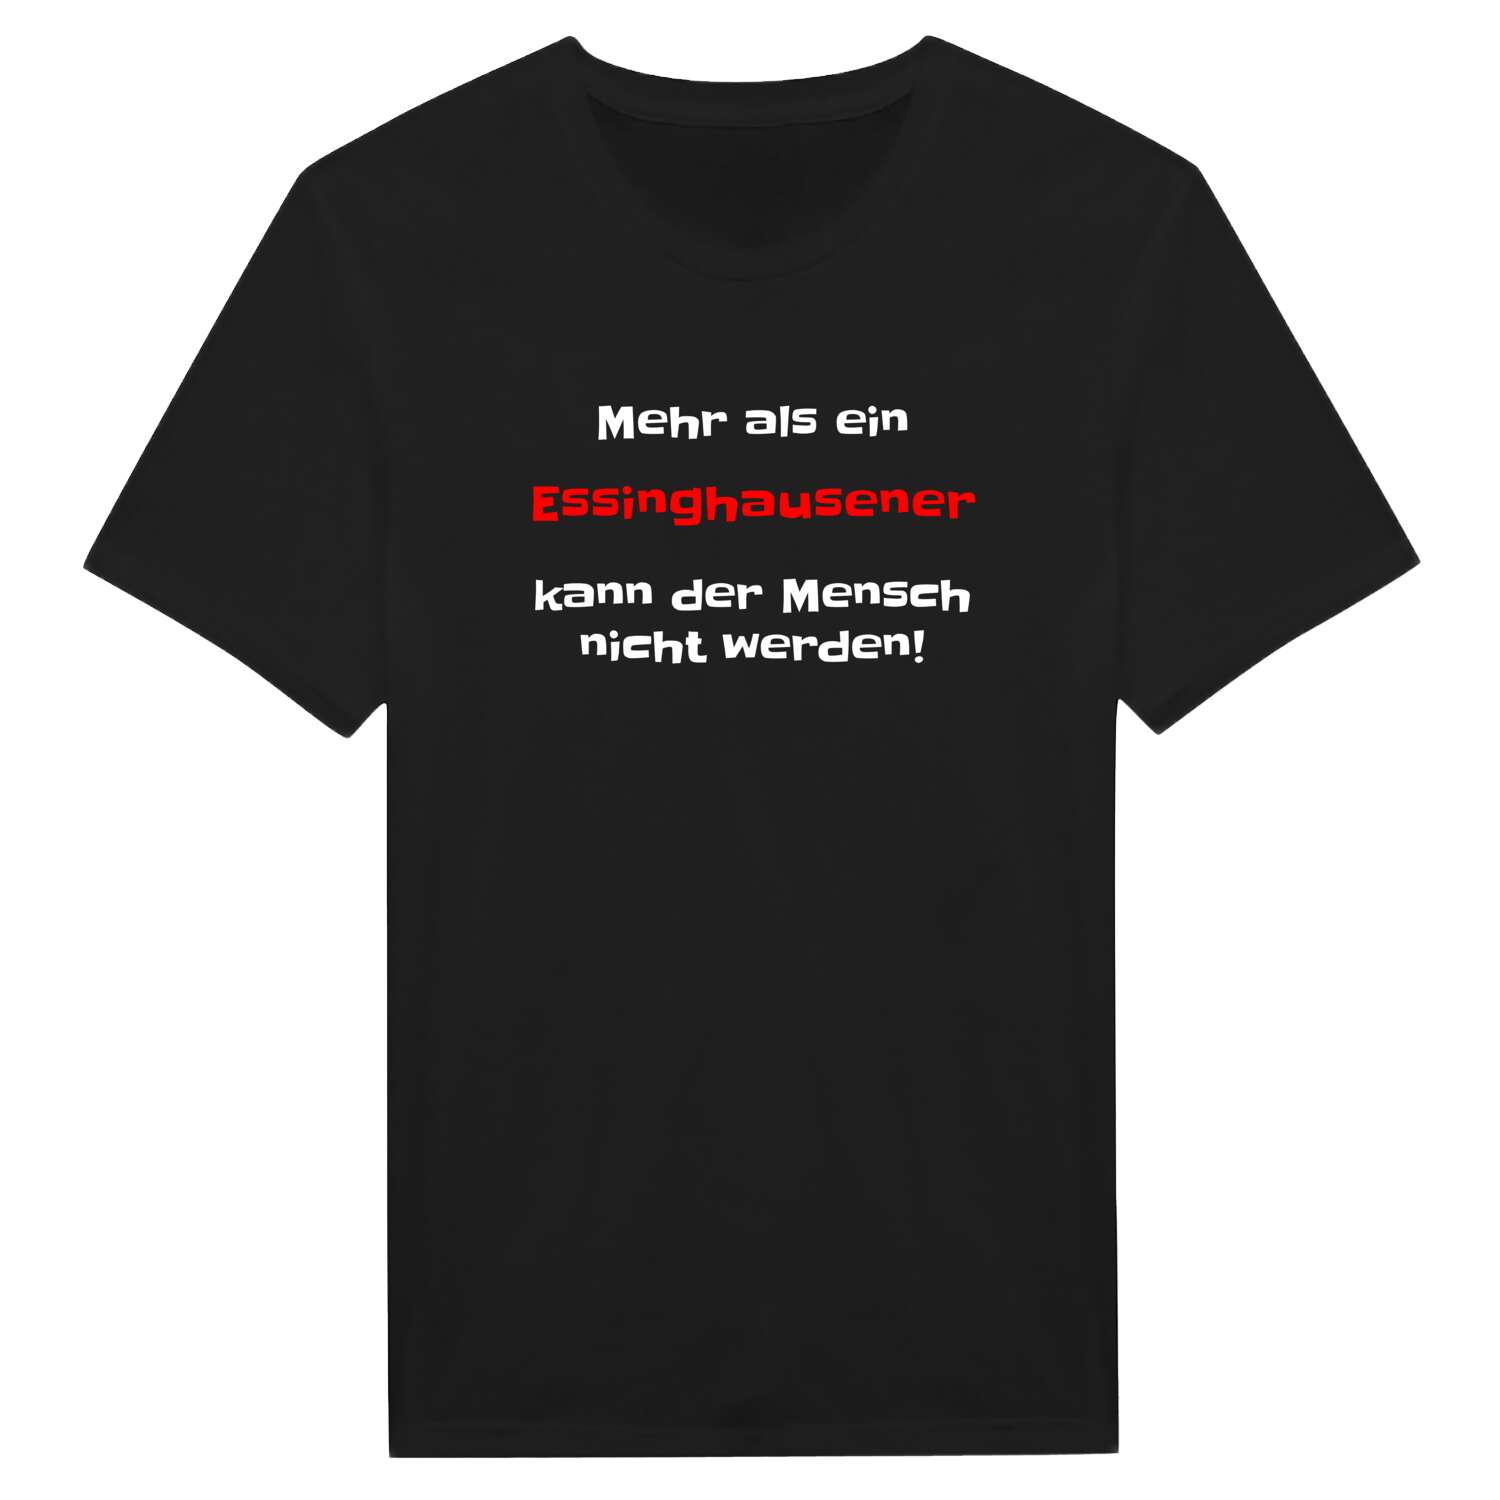 Essinghausen T-Shirt »Mehr als ein«